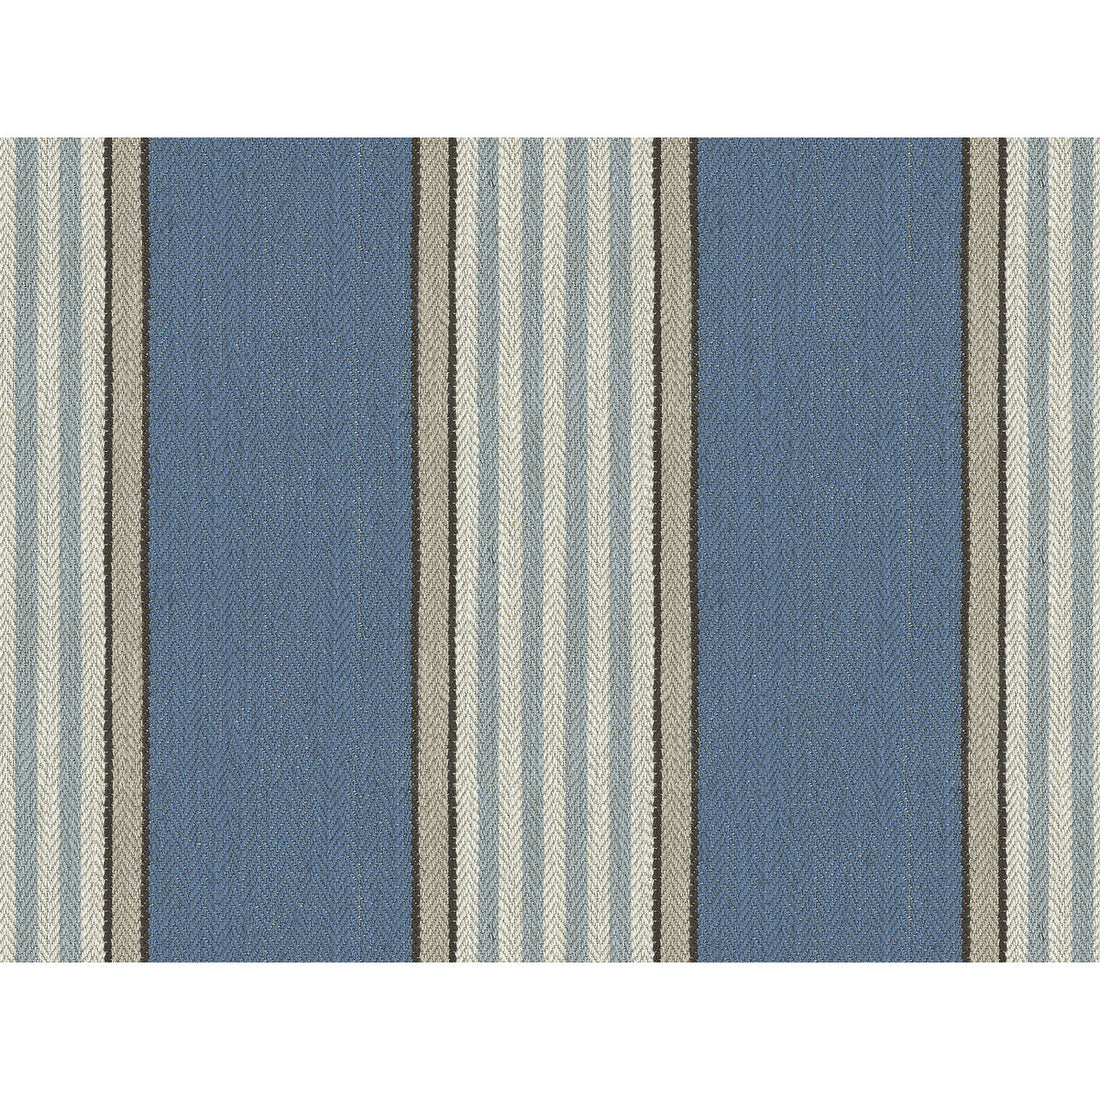 Kravet Basics fabric in 34497-516 color - pattern 34497.516.0 - by Kravet Basics